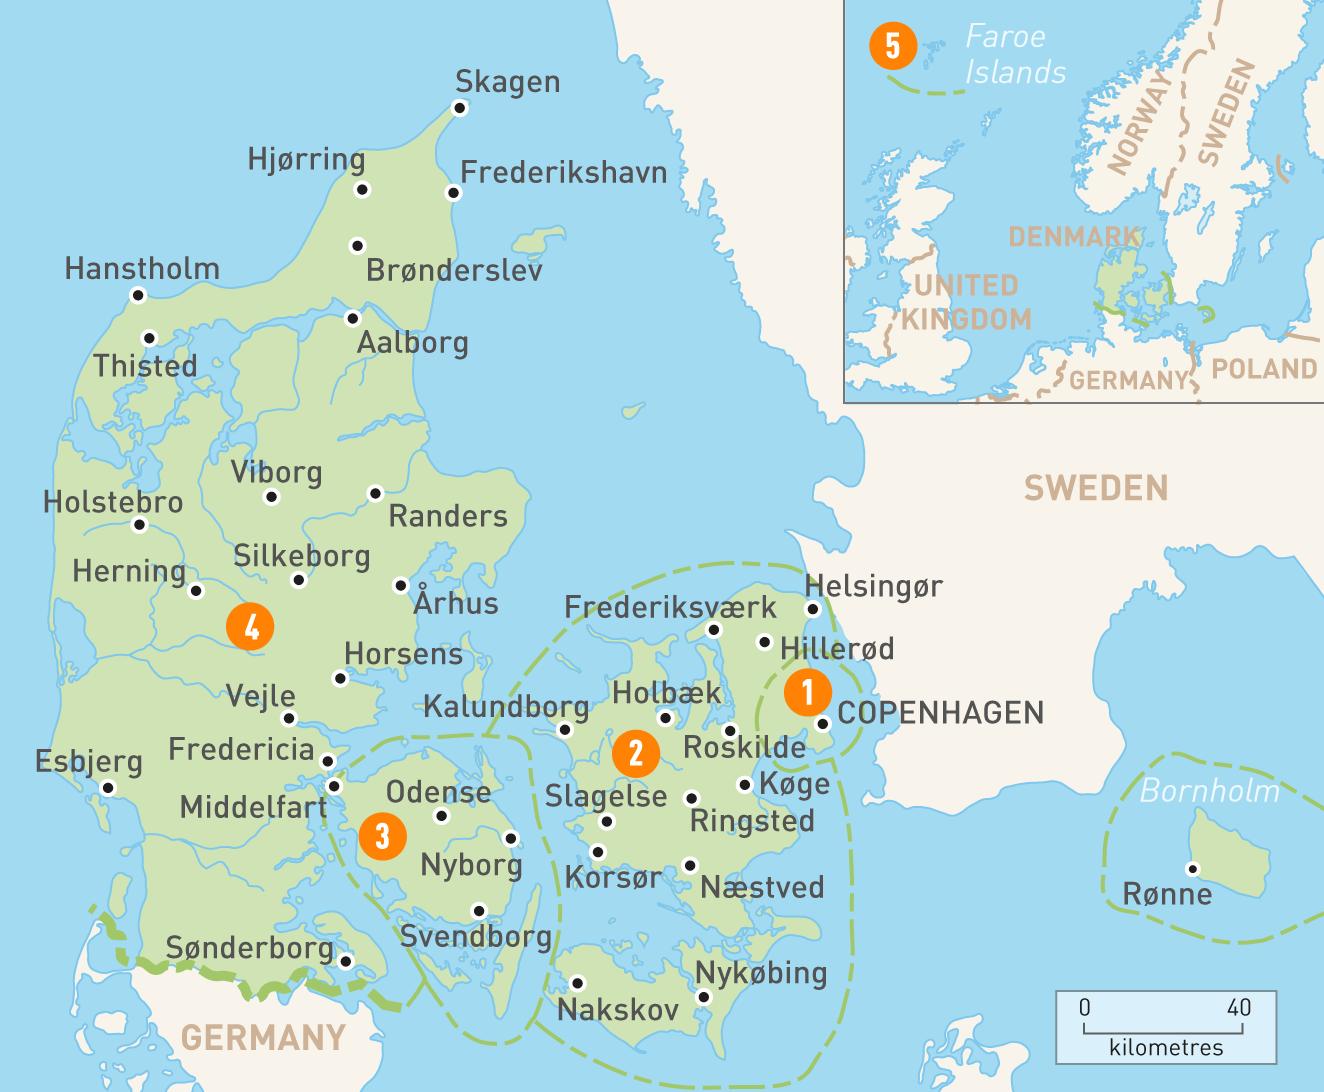 Tanskan saarilla kartta - Kartta tanskan saaret (Pohjois-Eurooppa